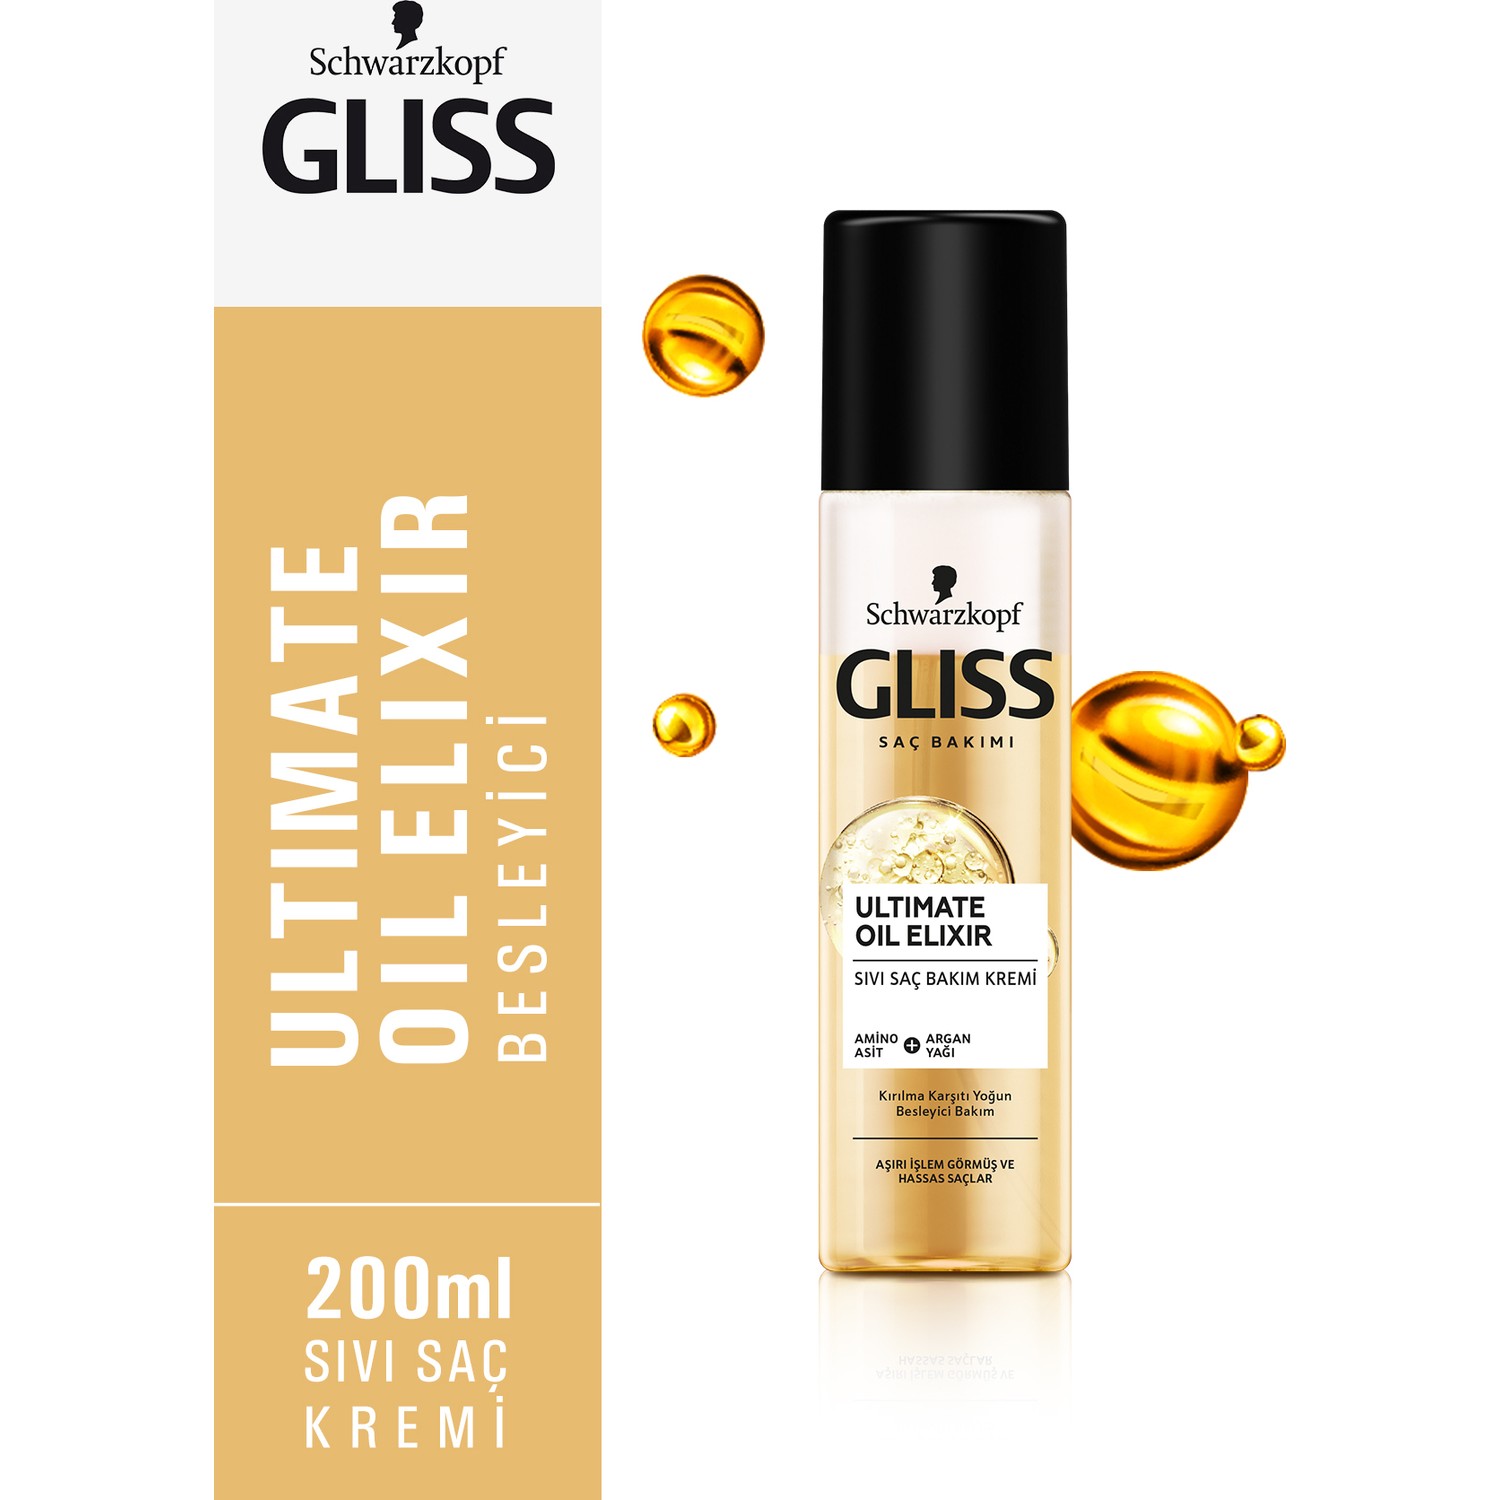 Gliss Ultimate Oil Elixir Sivi Sac Yorumlari